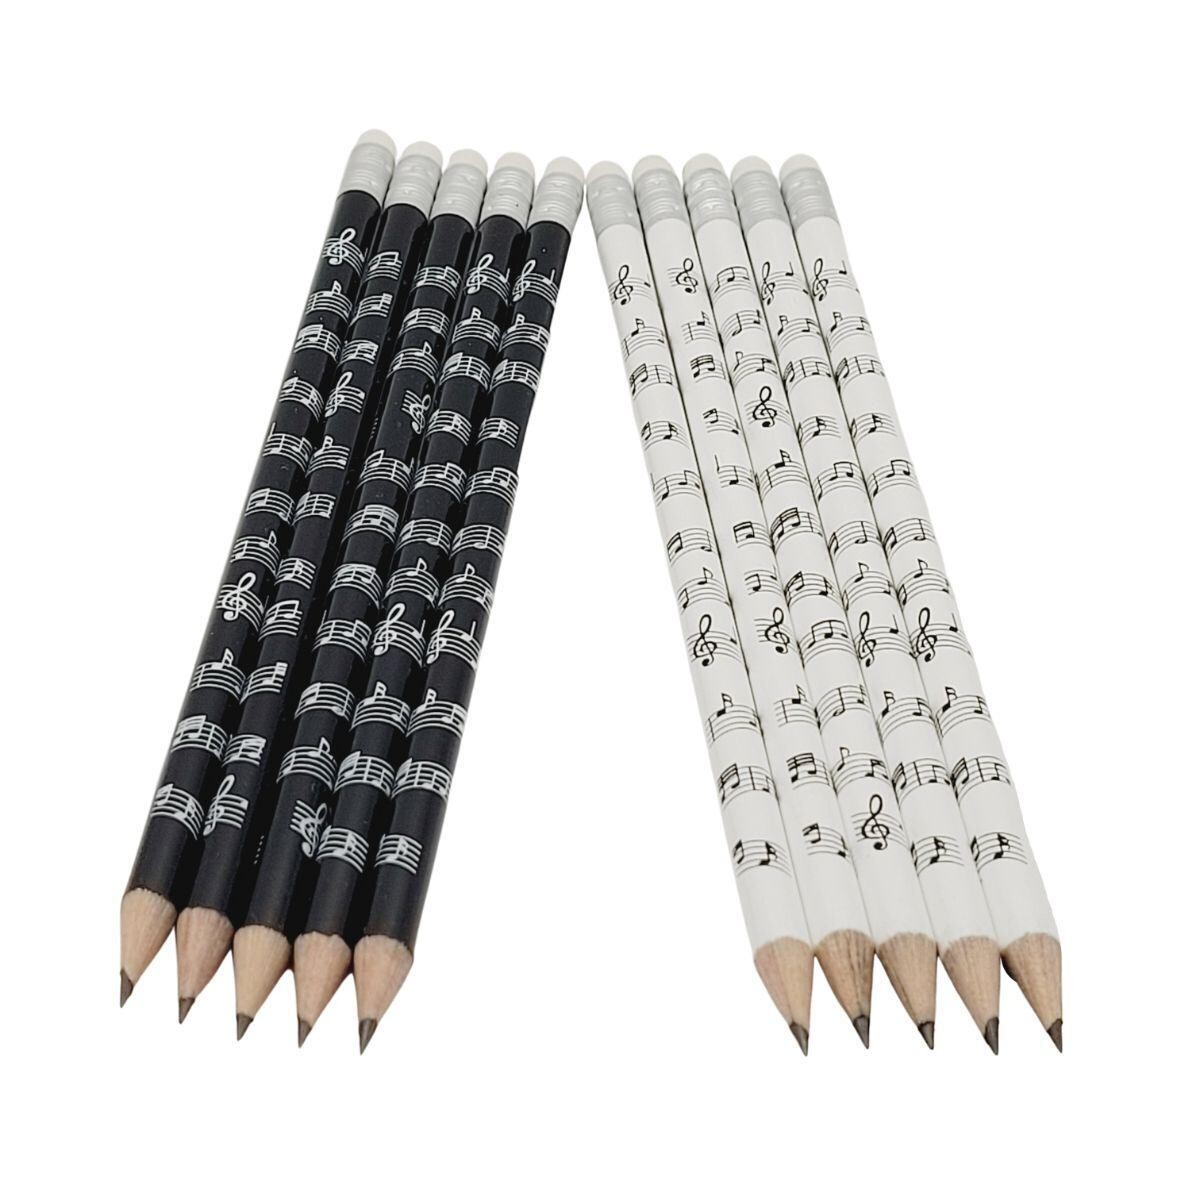 10 Bleistifte mit Note in weiß + schwarz